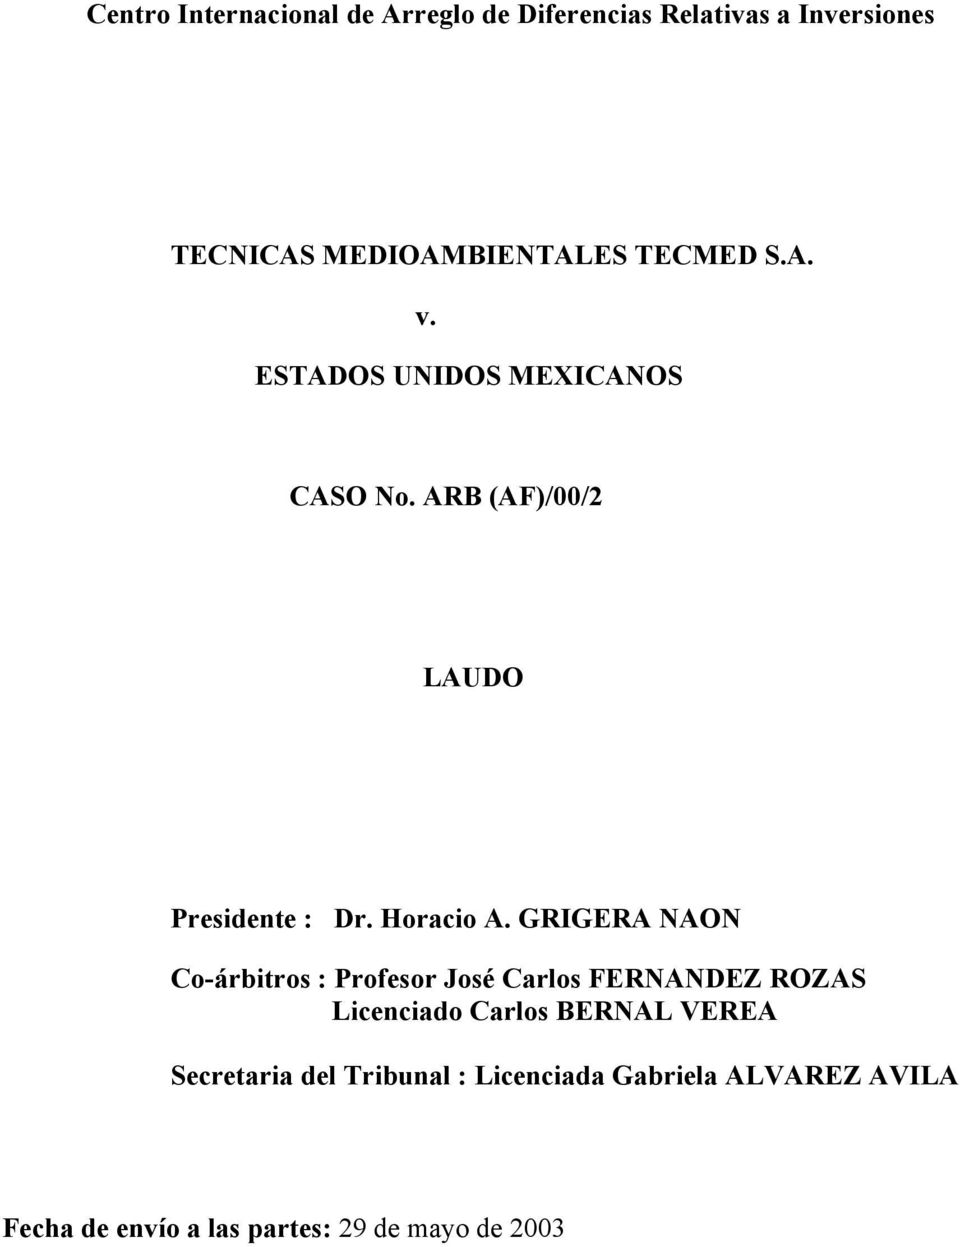 GRIGERA NAON Co-árbitros : Profesor José Carlos FERNANDEZ ROZAS Licenciado Carlos BERNAL VEREA